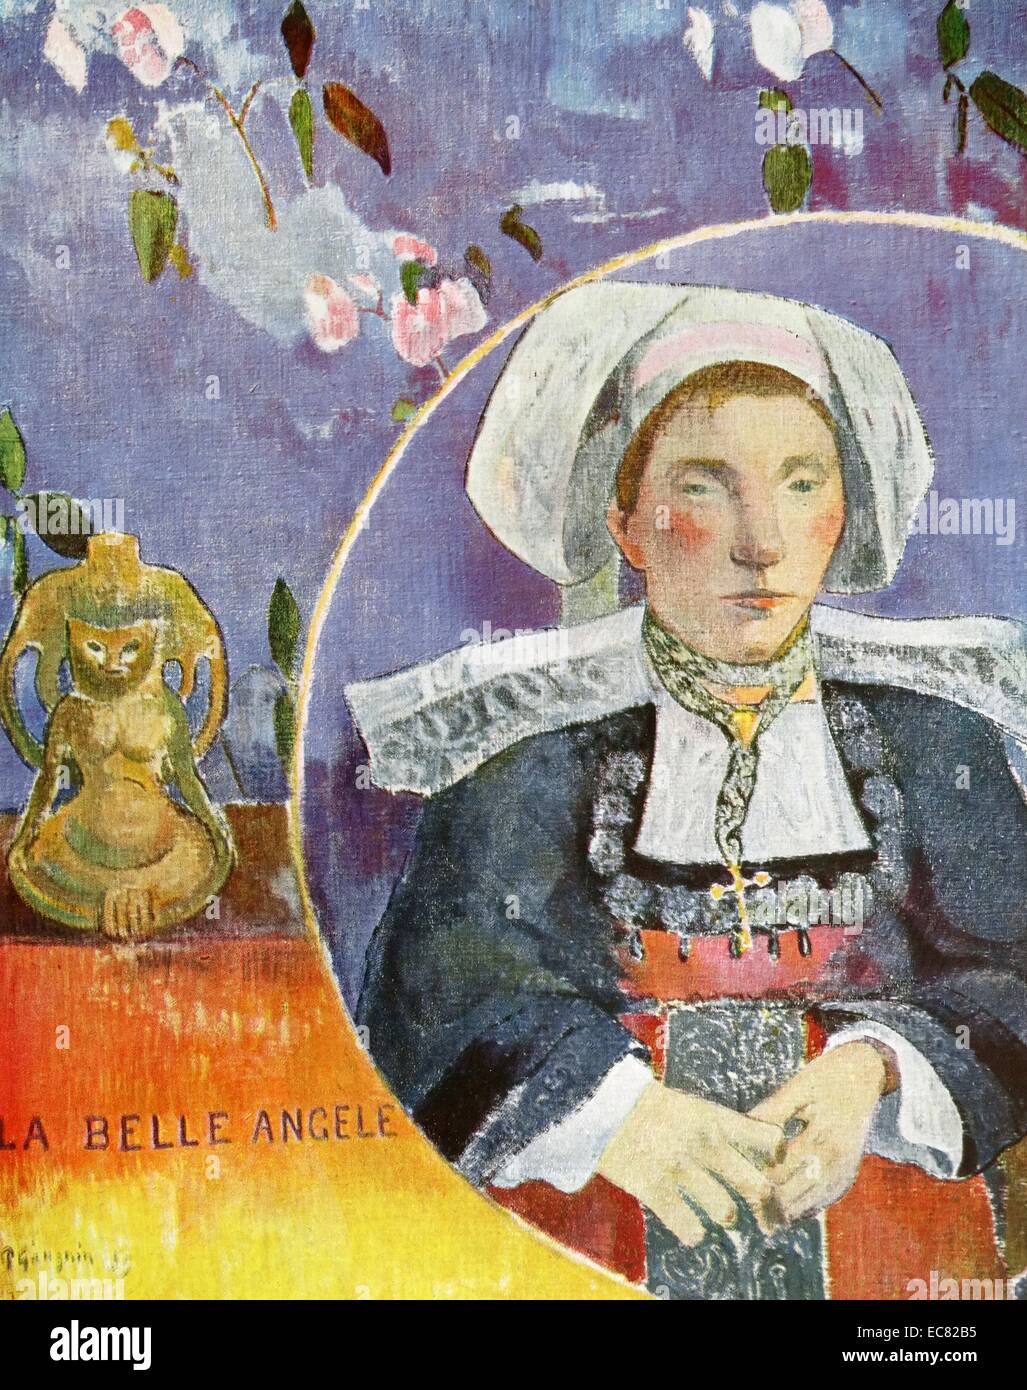 La belle Angèle 1889 von Paul Gauguin 1848 - 8 Mai 1903) French Post-Impressionist Künstler, der nicht gut war, bis nach seinem Tod geschätzt Stockfoto